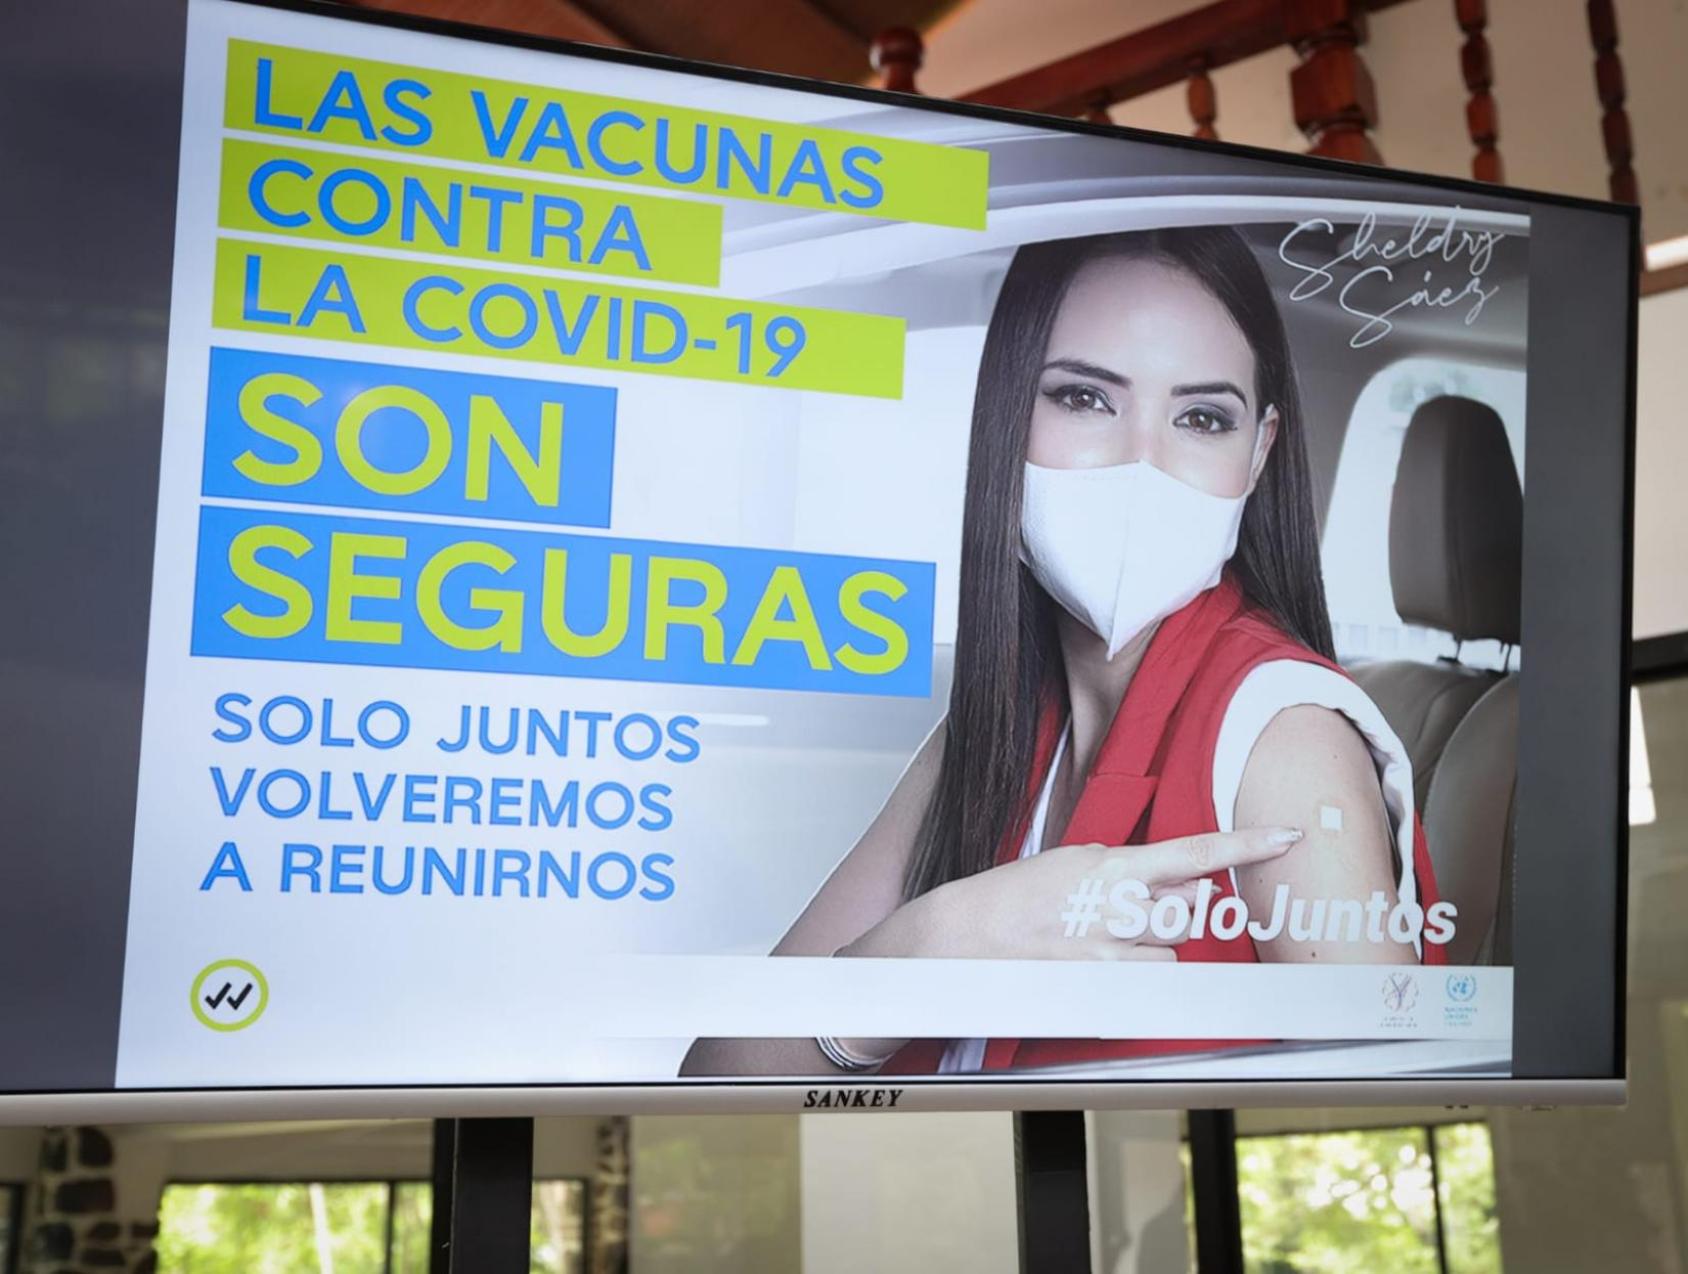 Proyección de una imagen de la campaña Solo Juntos con una mujer usando mascarilla, dentro de un automóvil.